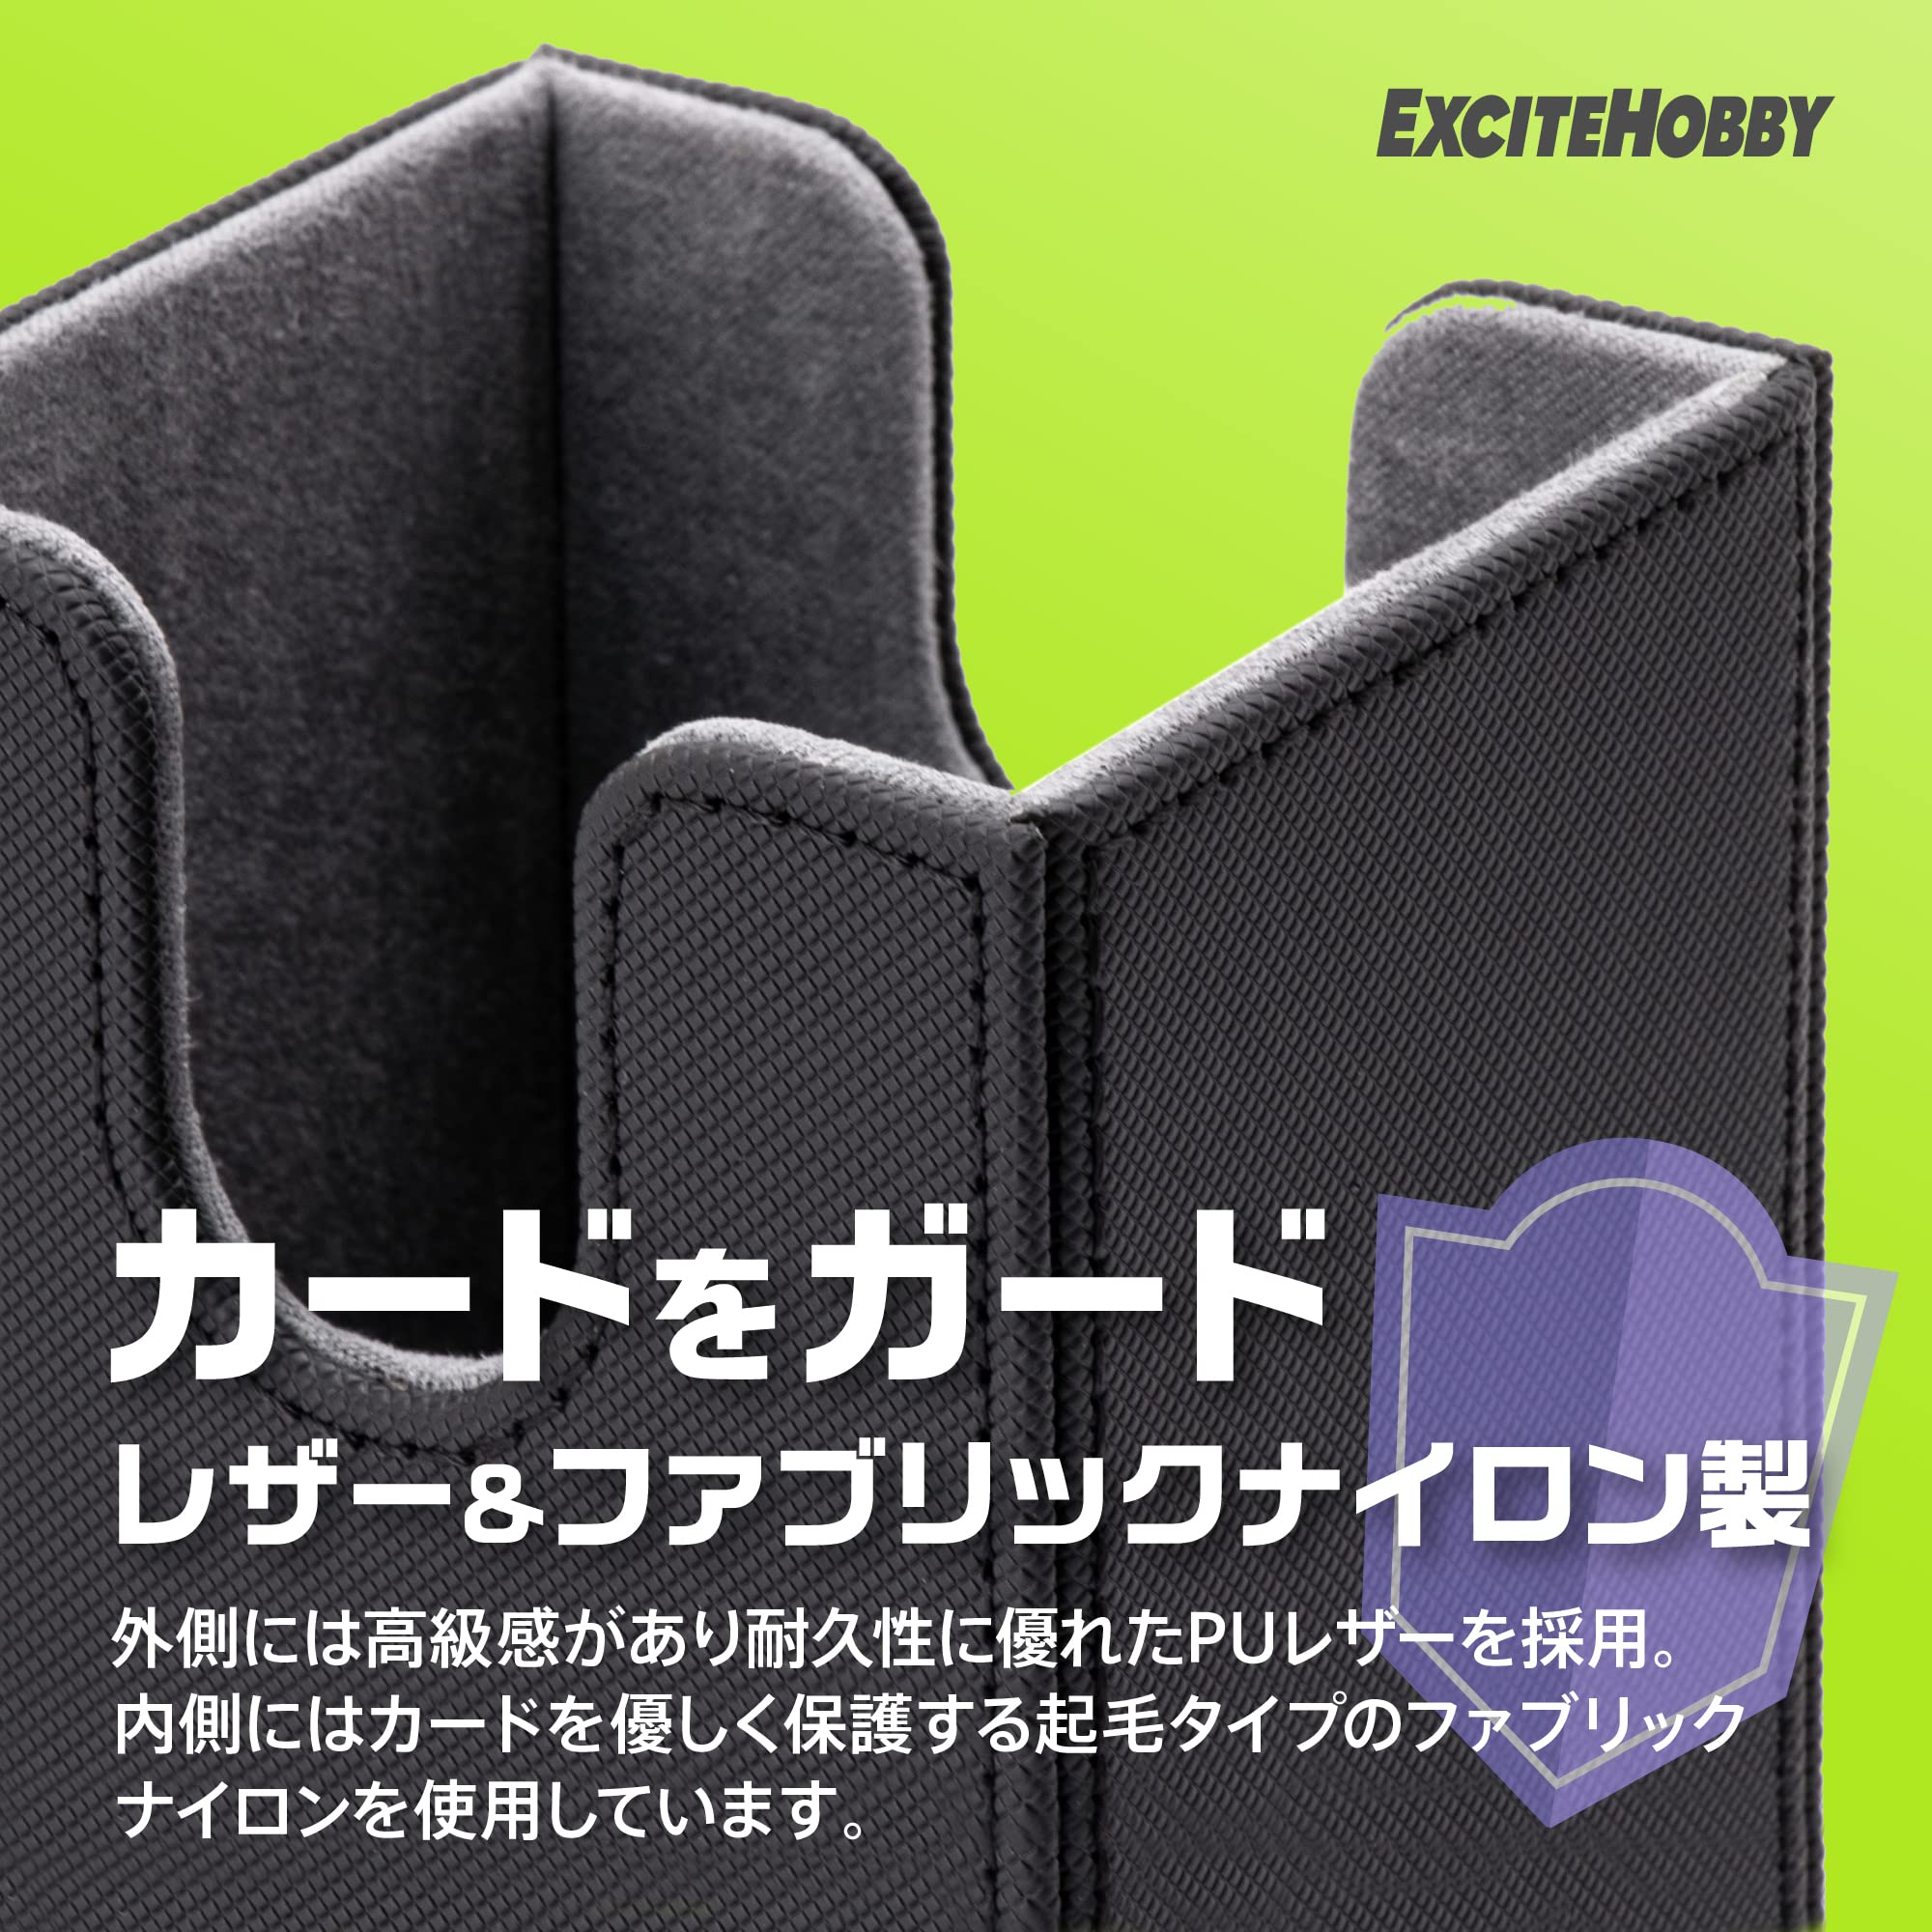 EXCITEHOBBY トレカ ３つのデッキケース トレーディング スリーブに入れたまま保存 カードケース 汎用的なトレーディングカードサイズに対応(スタンダート/スモール) 約300枚収納 マグネット開閉機能付き